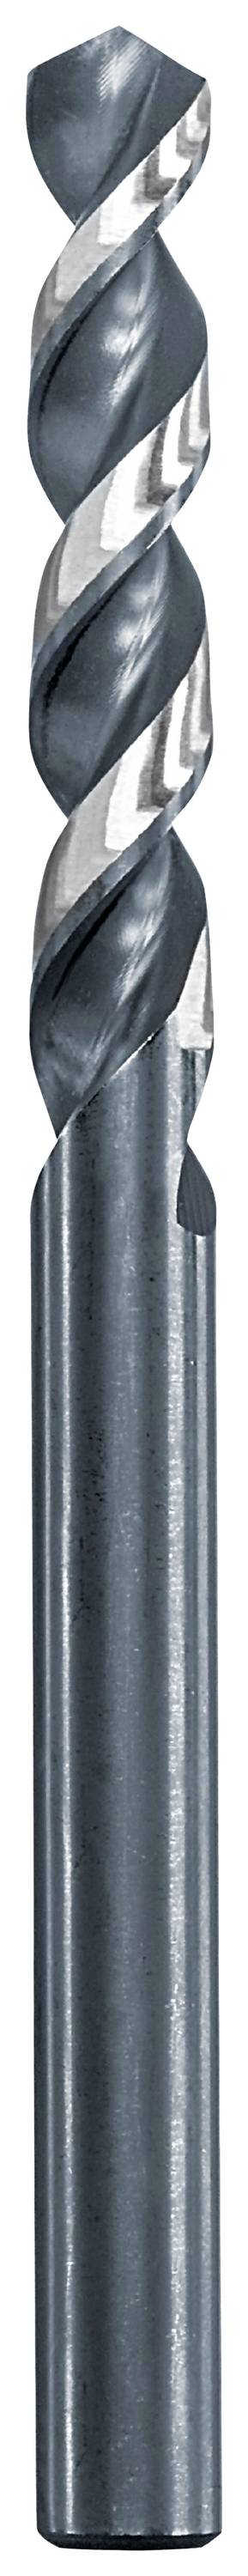 KWB 258633 Metall-Spiralbohrer 3.3 mm Gesamtlänge 65 mm 1 St.